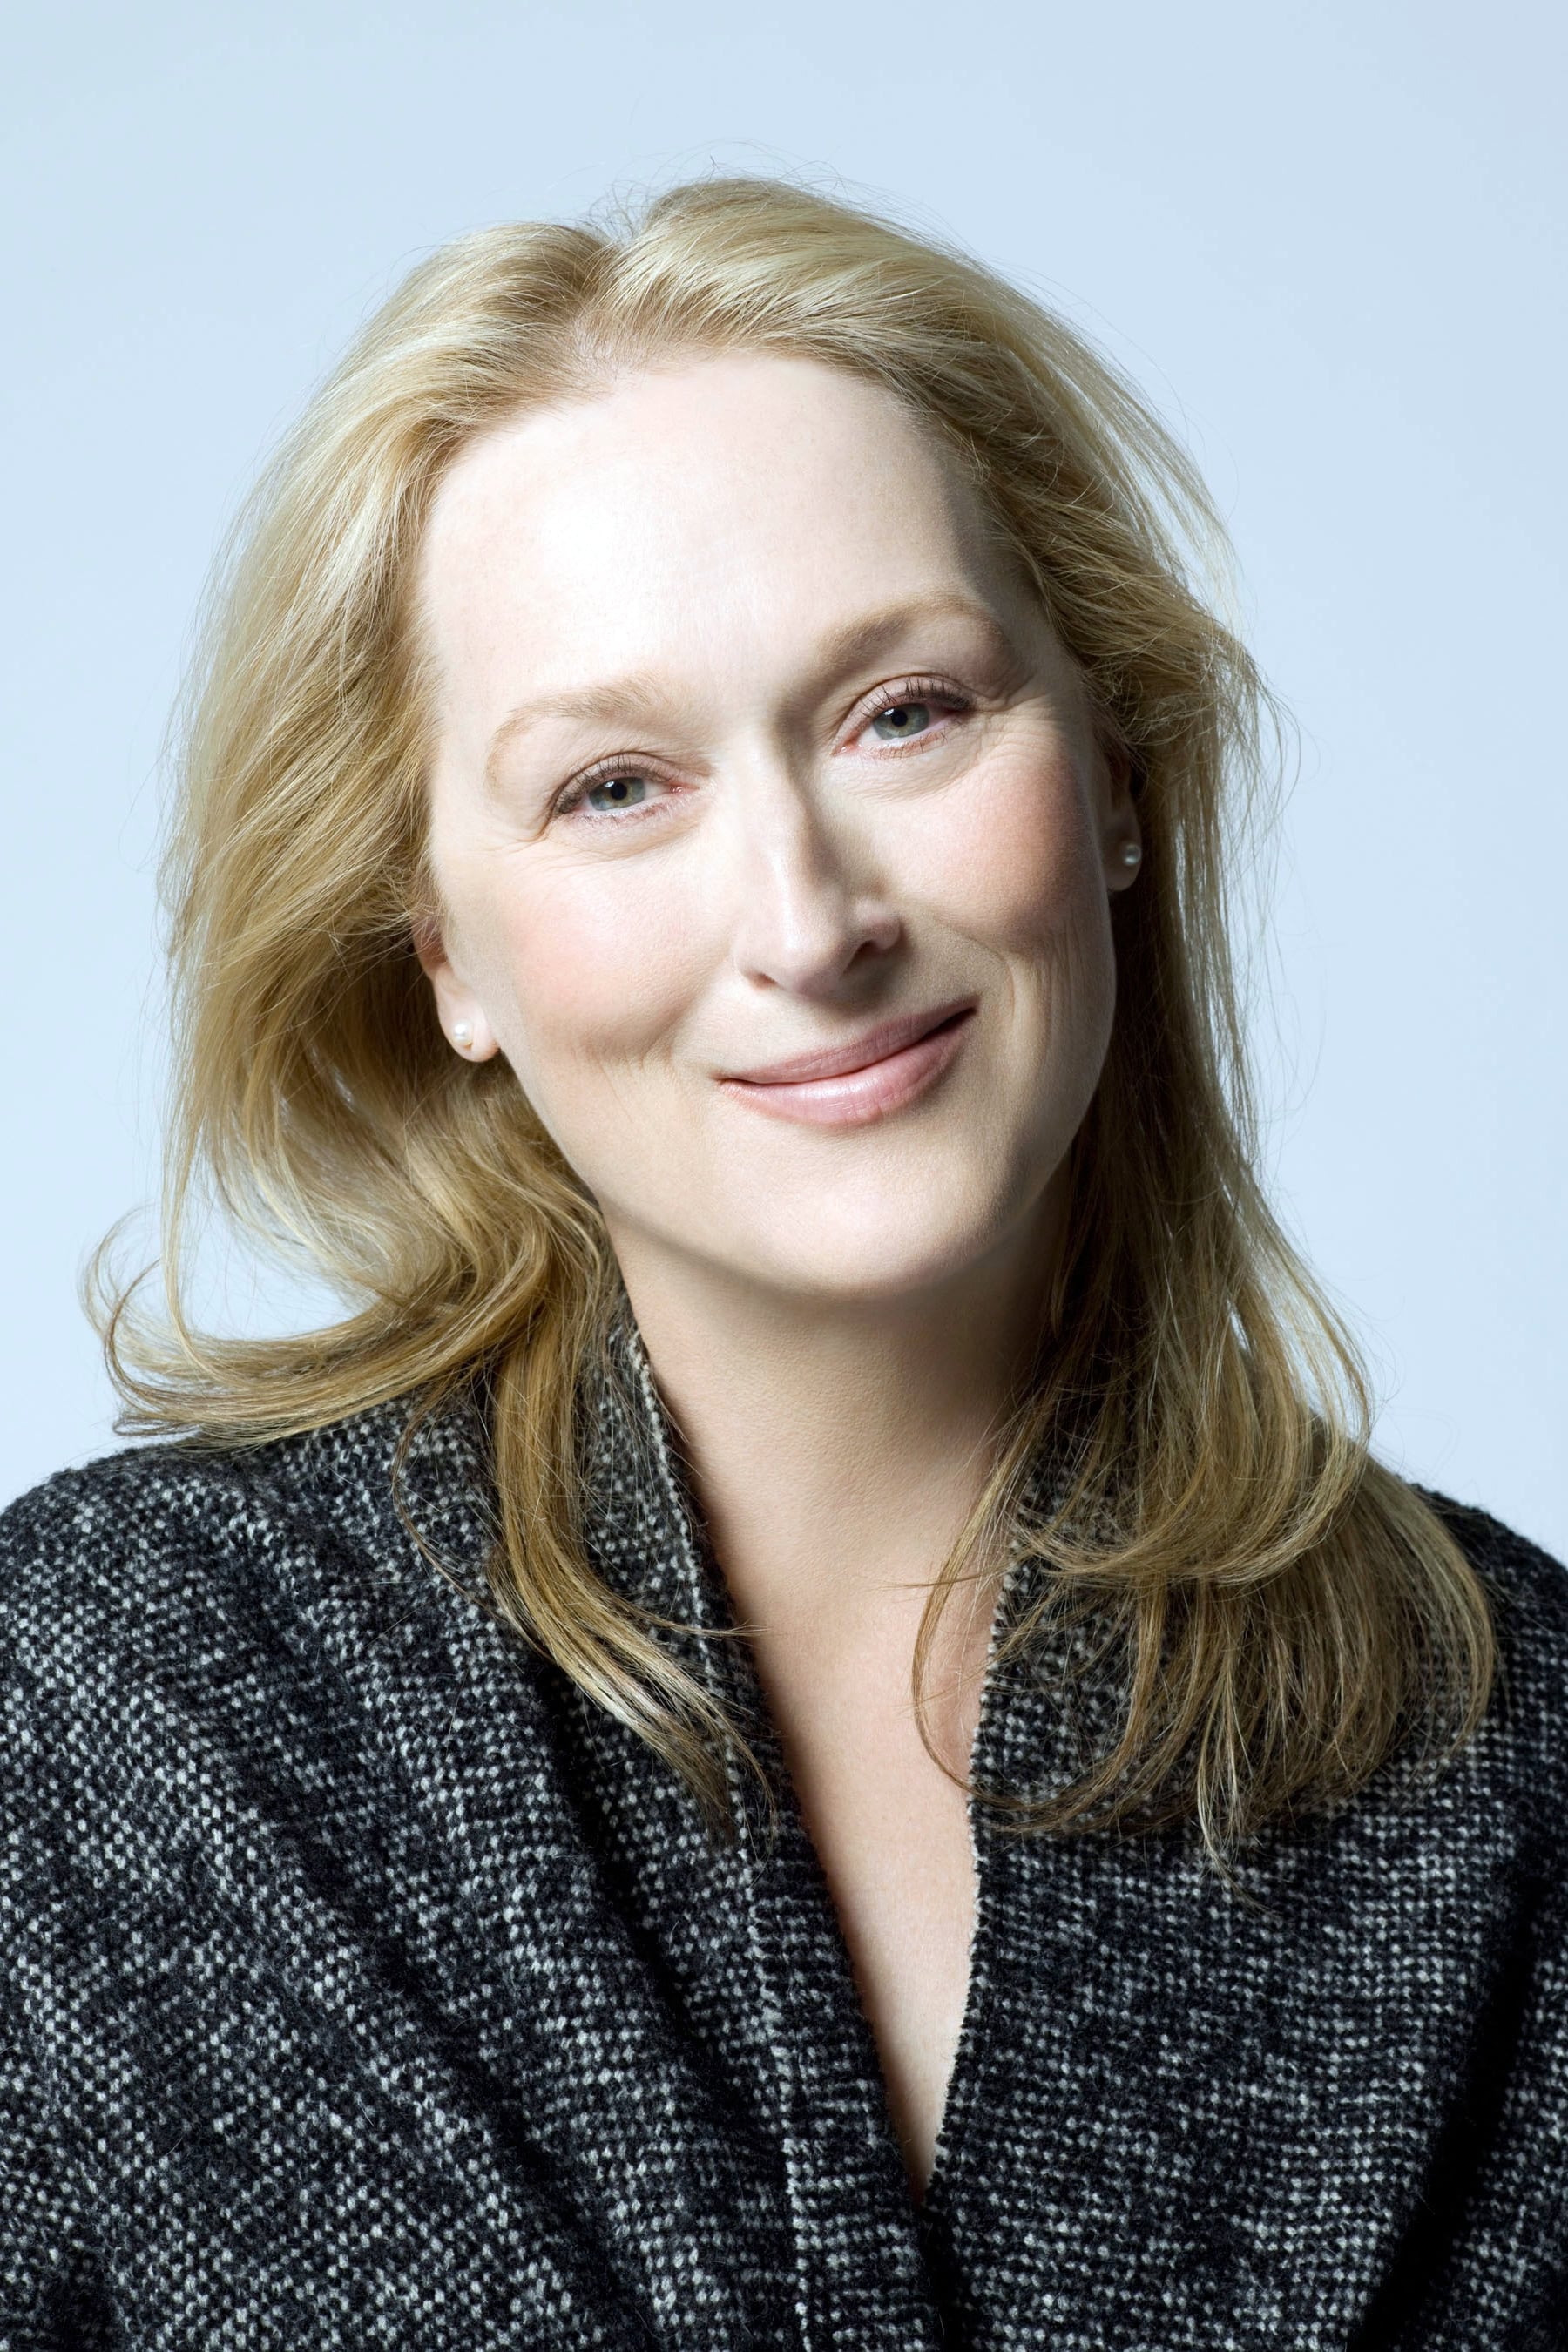 Meryl Streep image